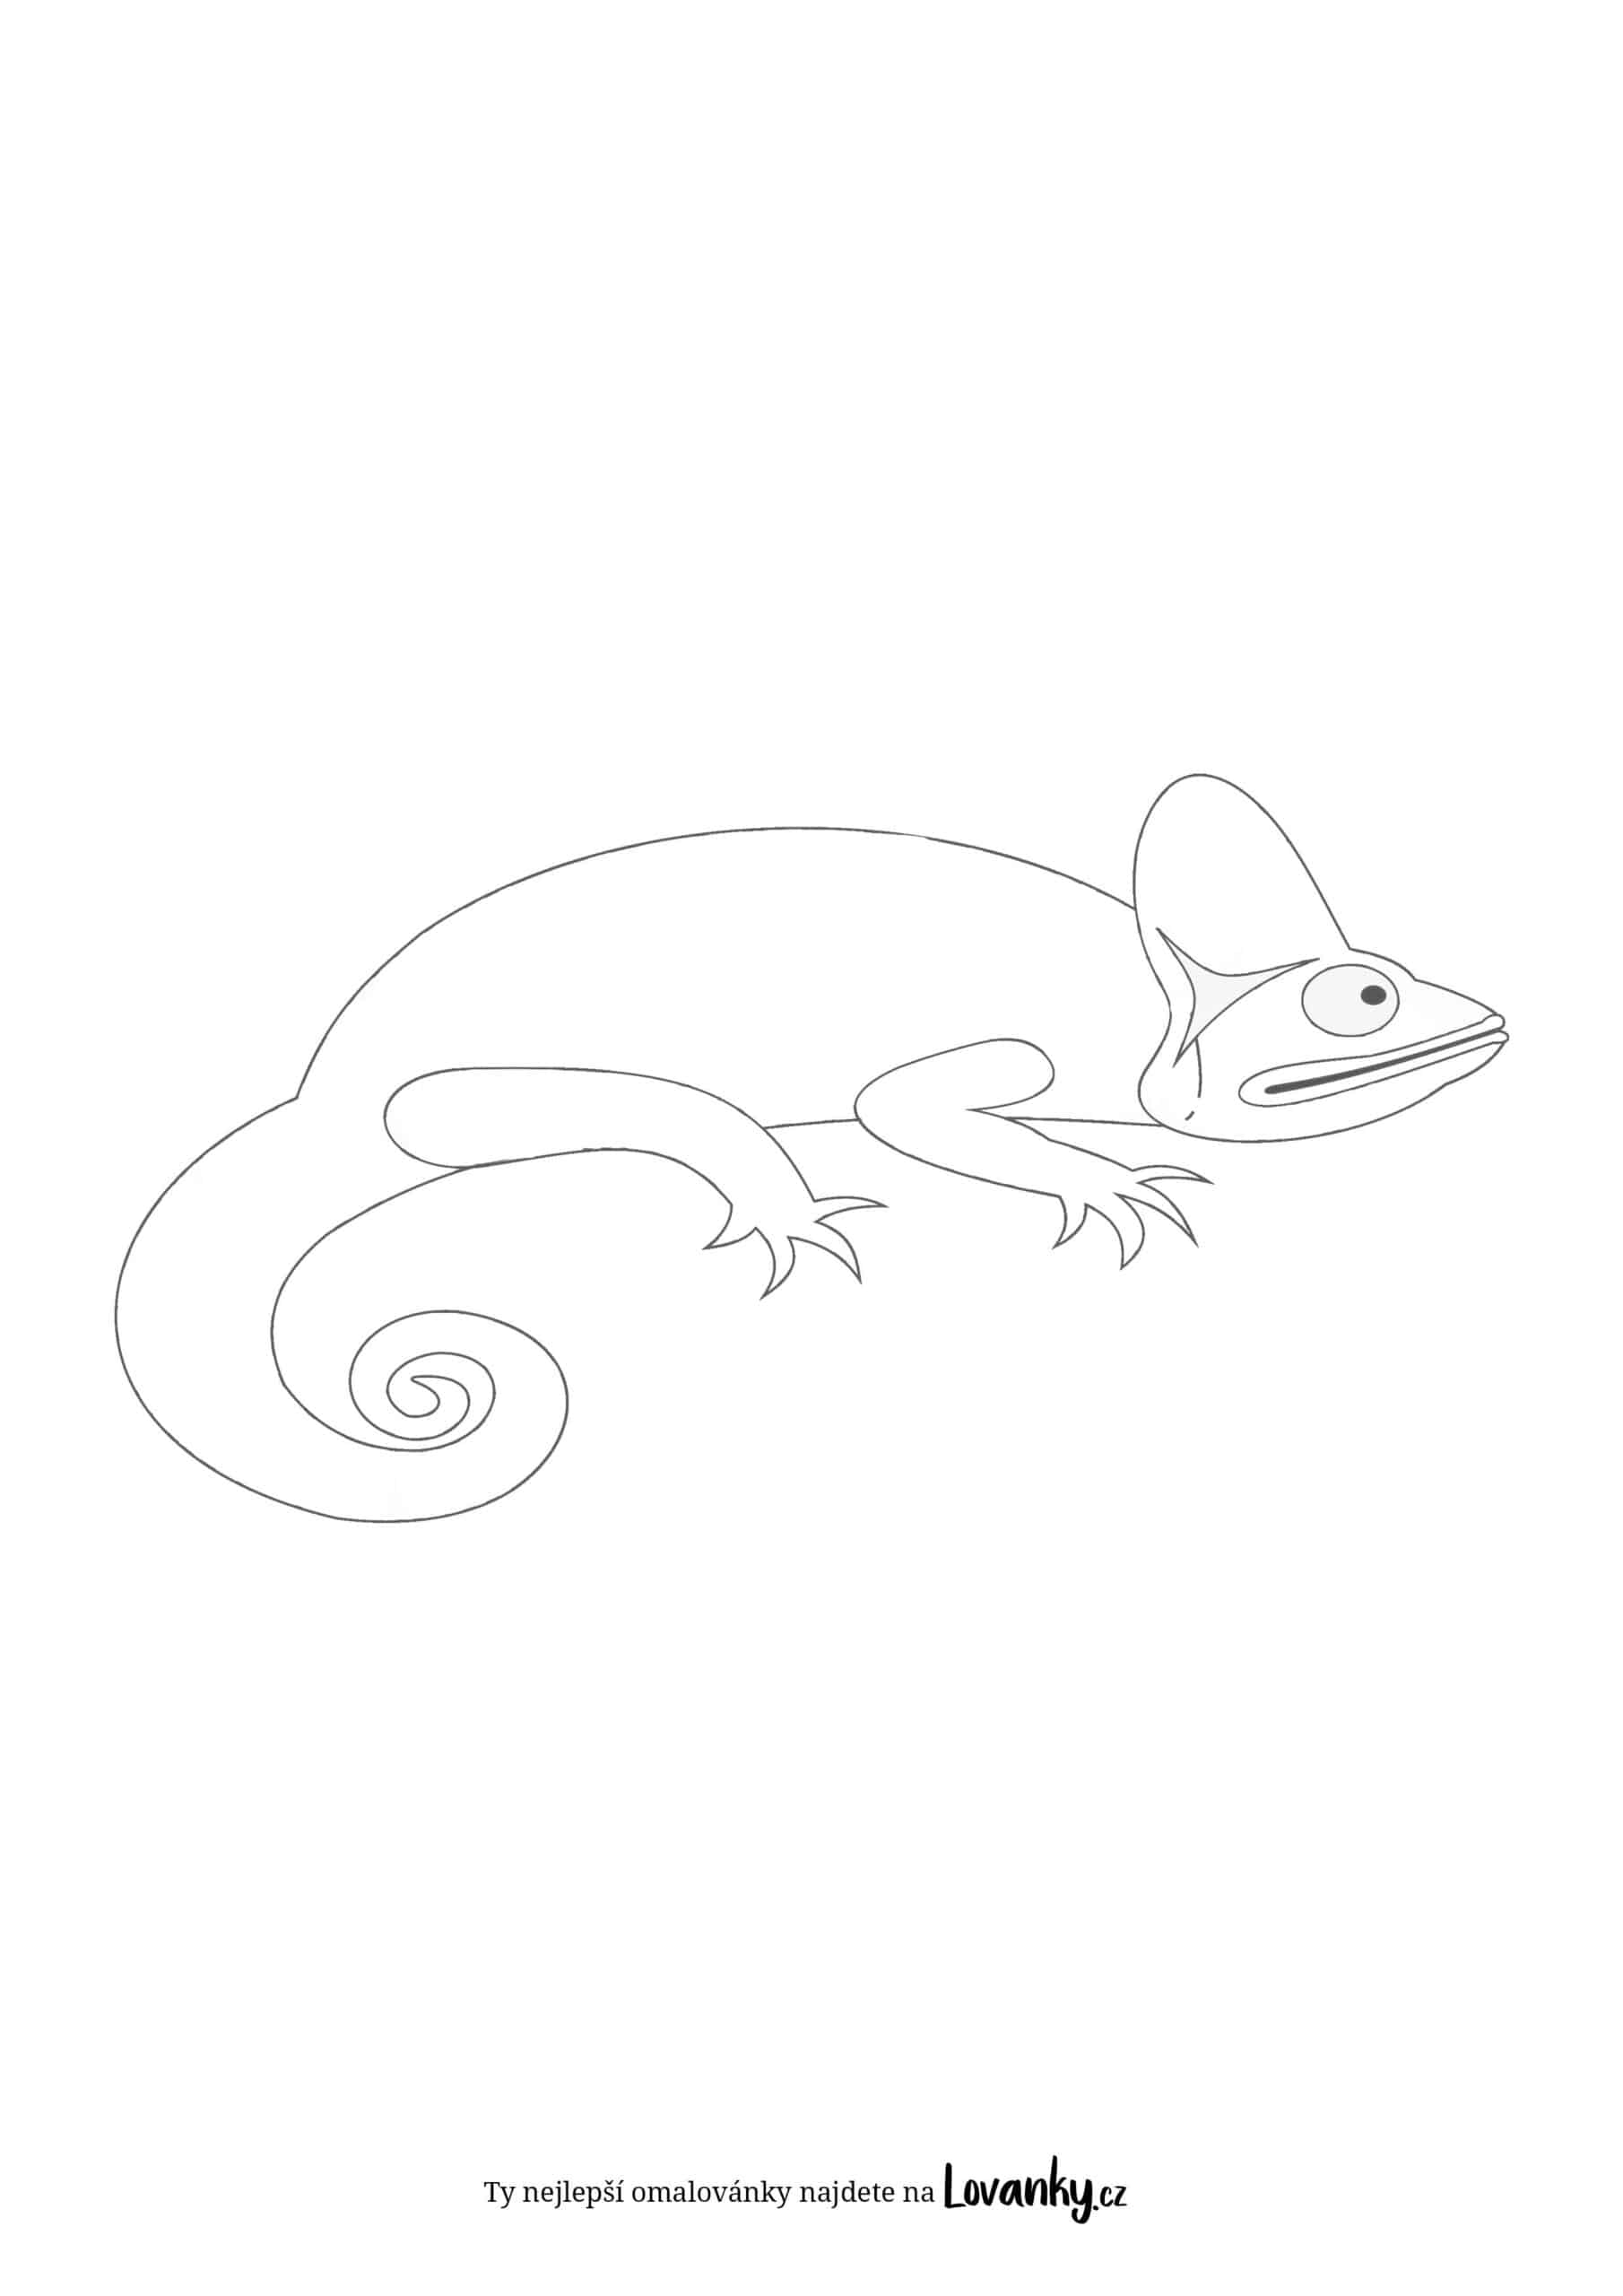 Jednoduchý chameleon pro děti omalovánky